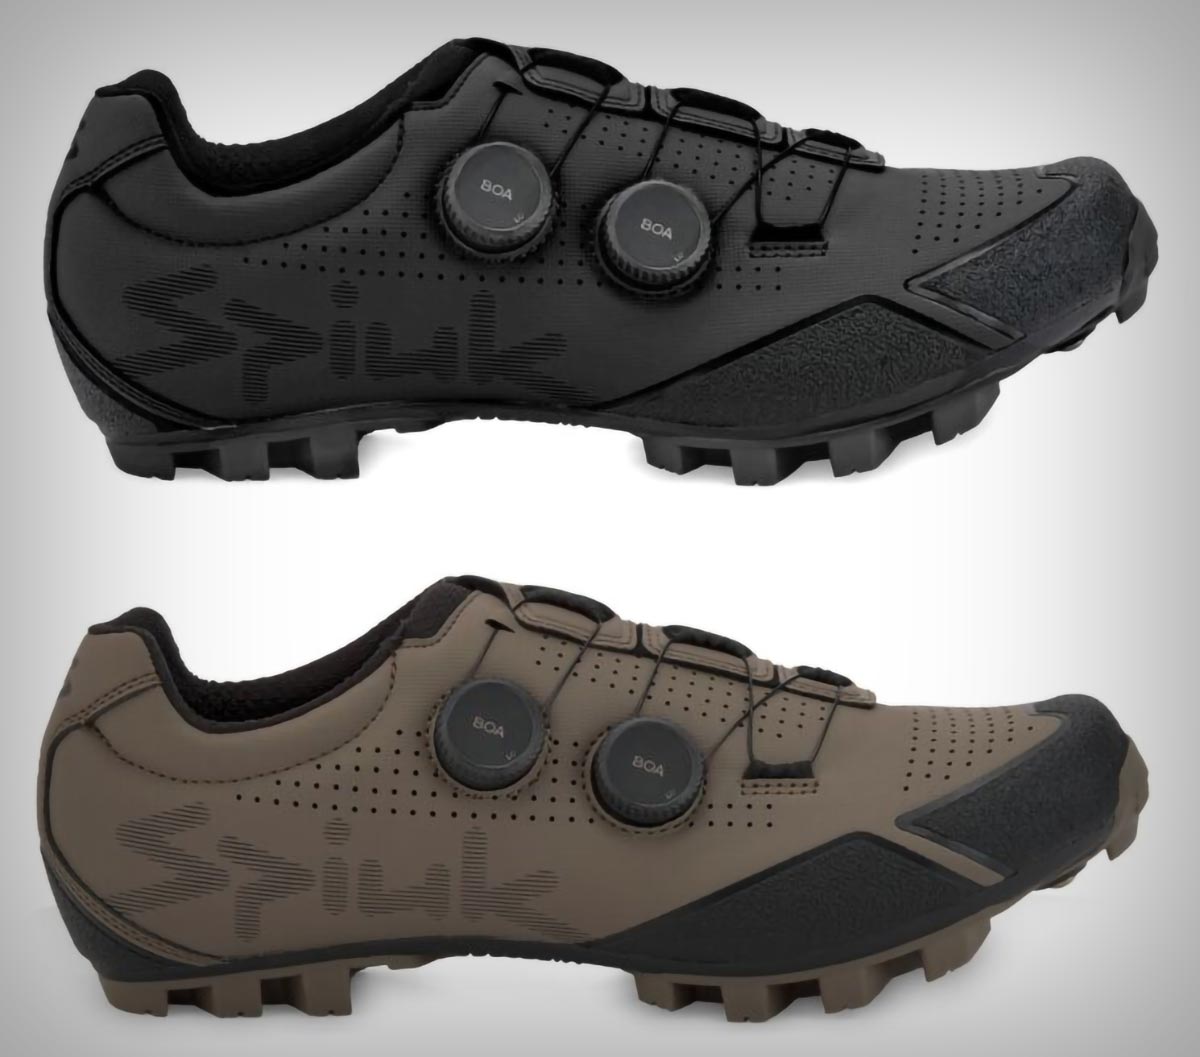 Spiuk Loma Carbon, unas zapatillas optimizadas para gravel con suela de carbono y doble sistema BOA de ajuste